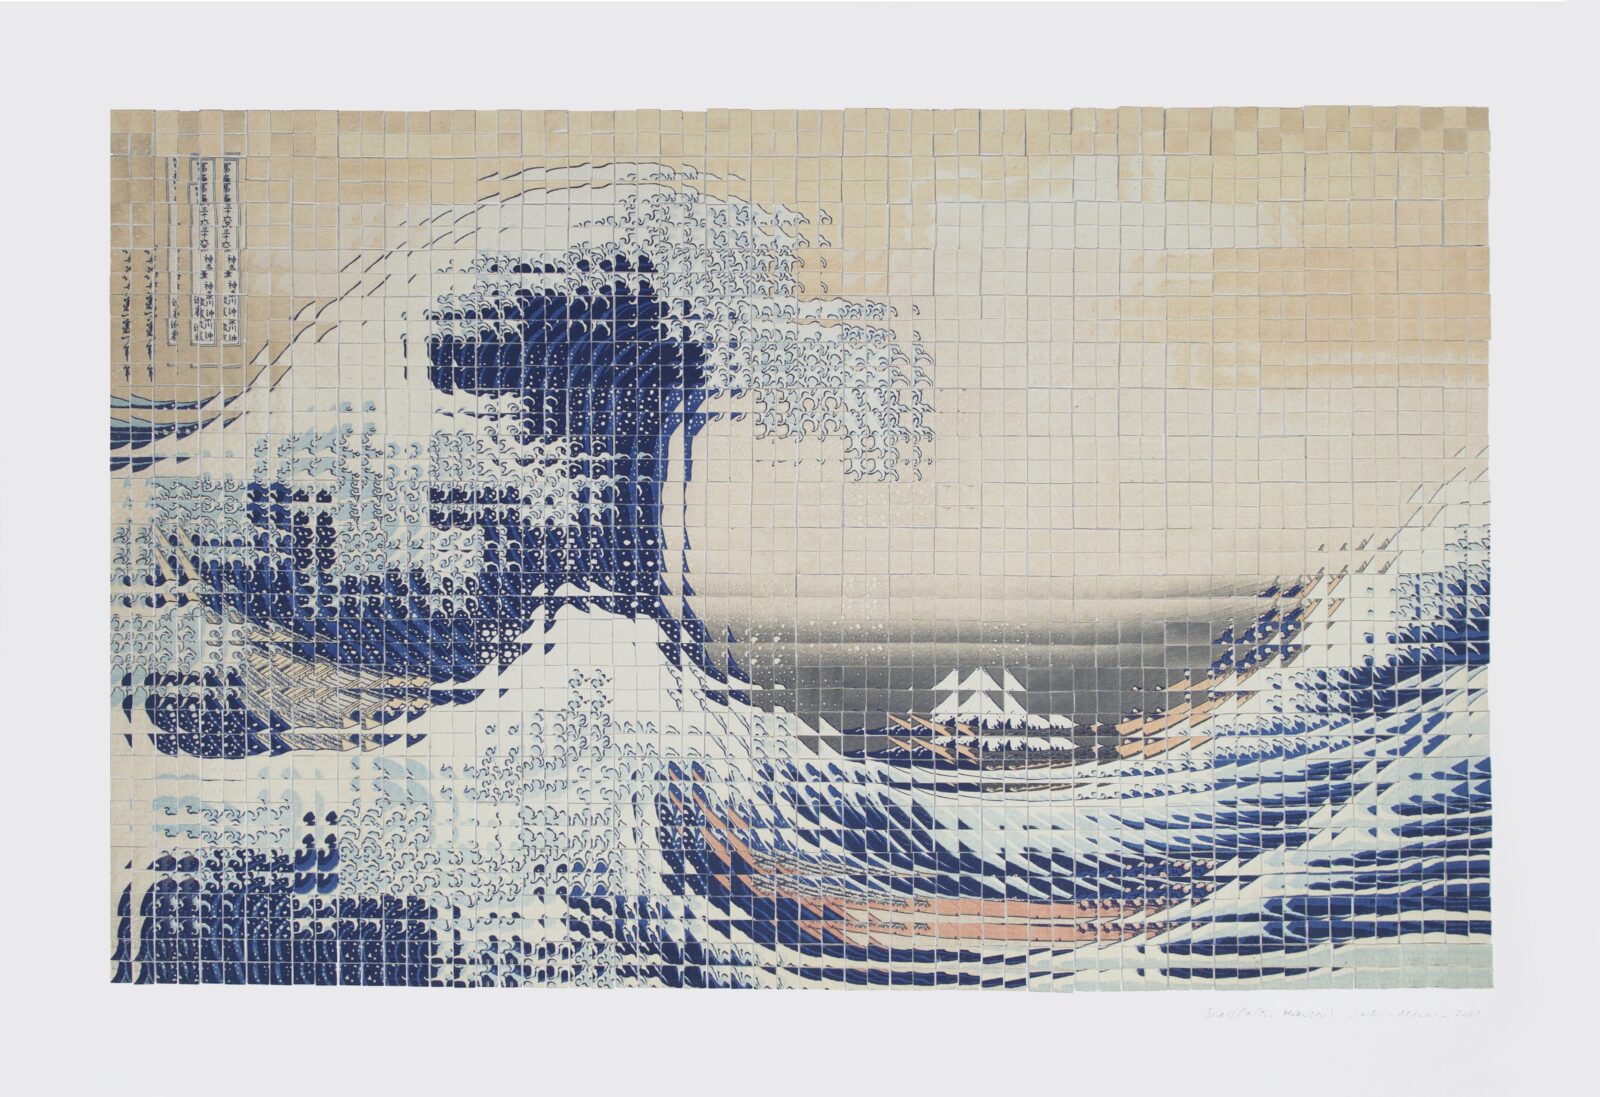 Swell (after Hokusai)